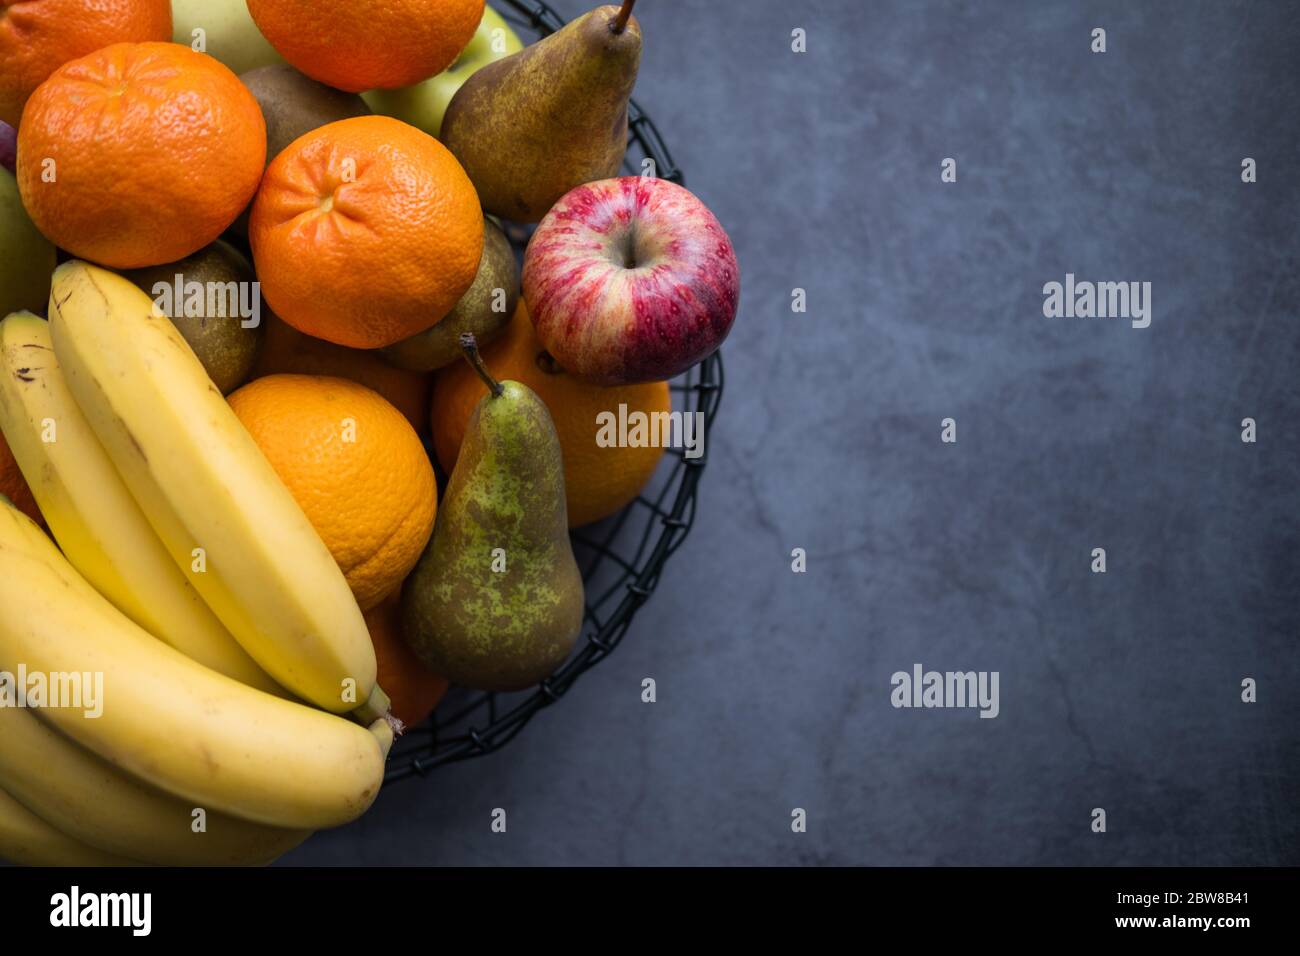 Vielfalt an Früchten wie Äpfel, Bananen, Birnen und Orangen auf einem Fruchtaufstrich auf betonierten Hintergrund. Gesunde Ernährung. Draufsicht. Kopierbereich rechts. Stockfoto